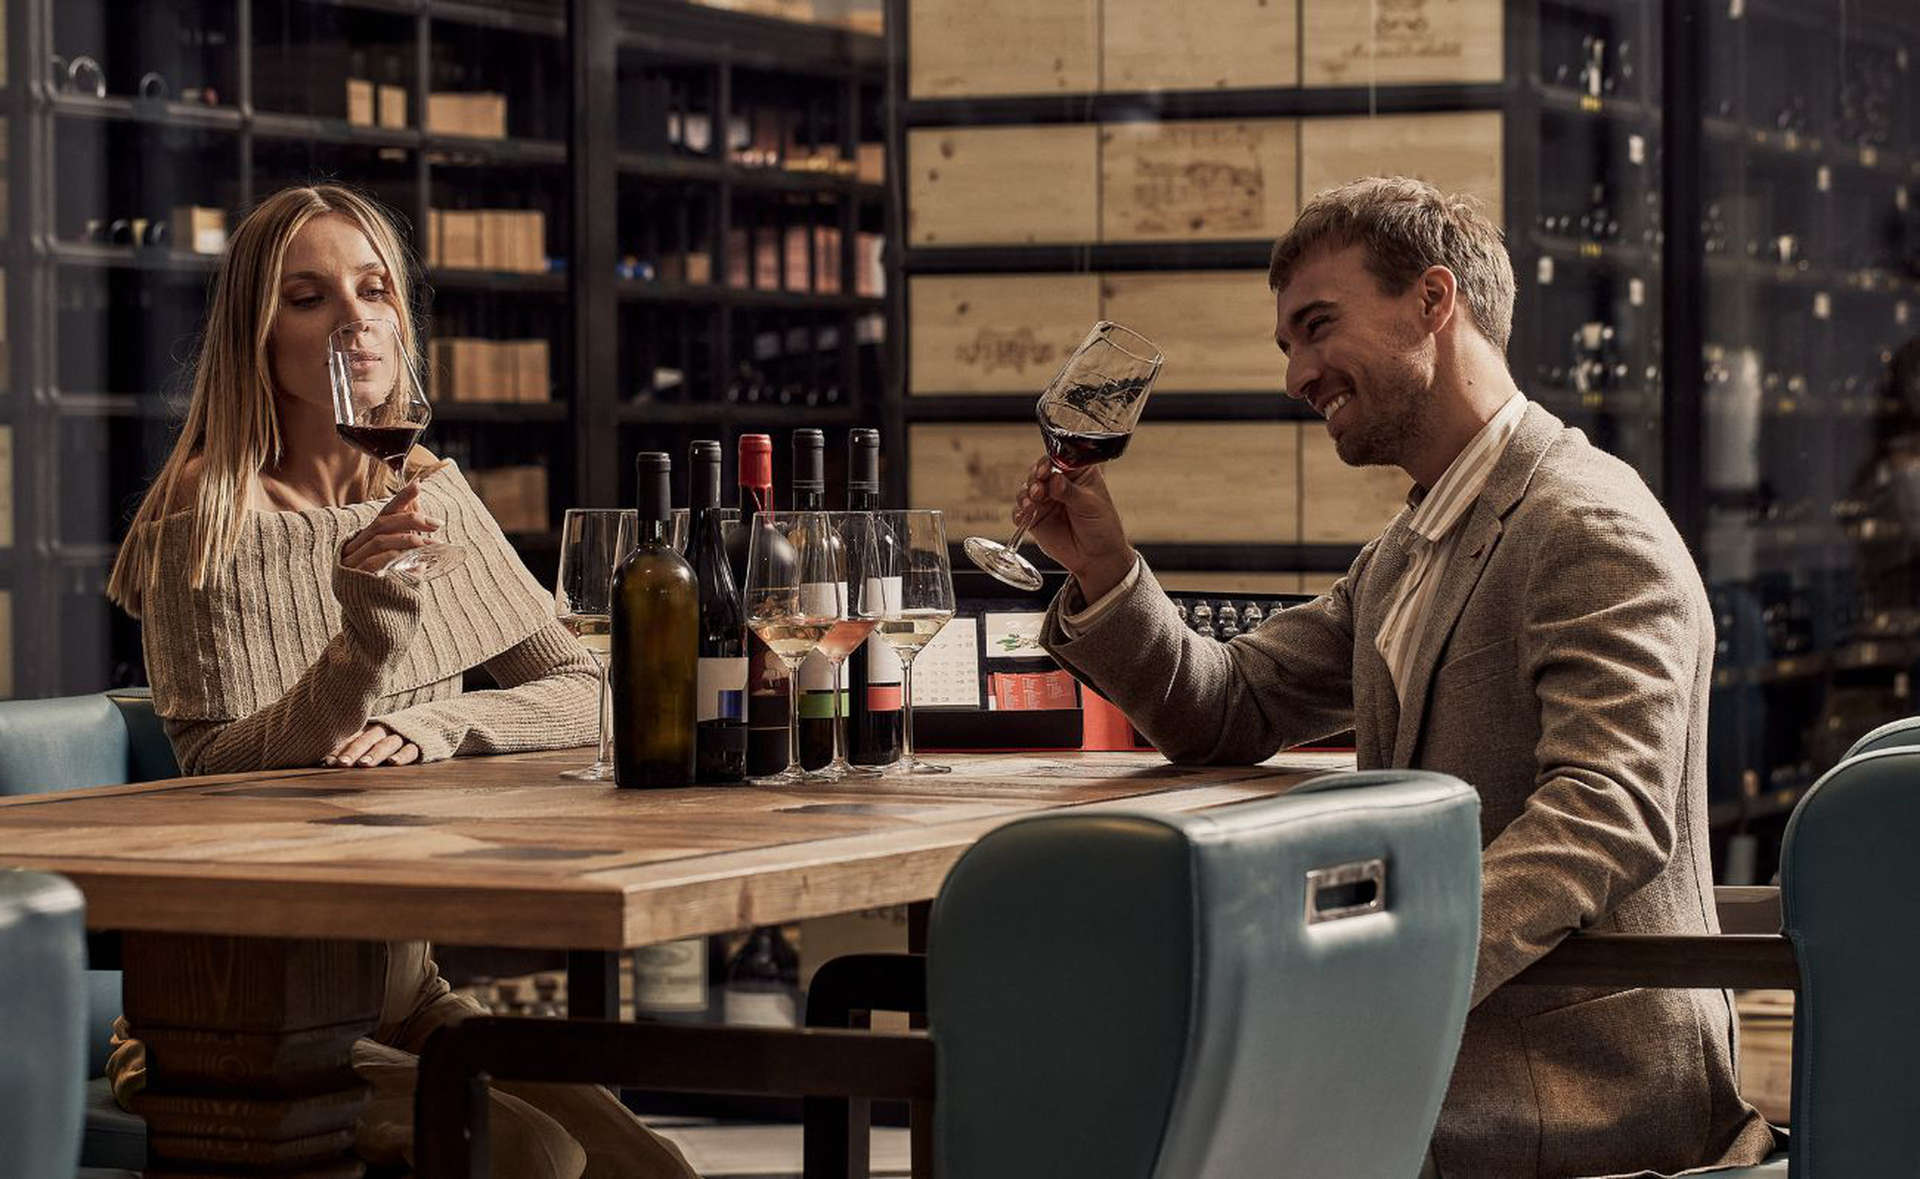 زوجان يتذوقان النبيذ في منتجع بارك لاين، أحد منتجعات لاكشري كوليكشِن وأنديته الصحية، ليماسول